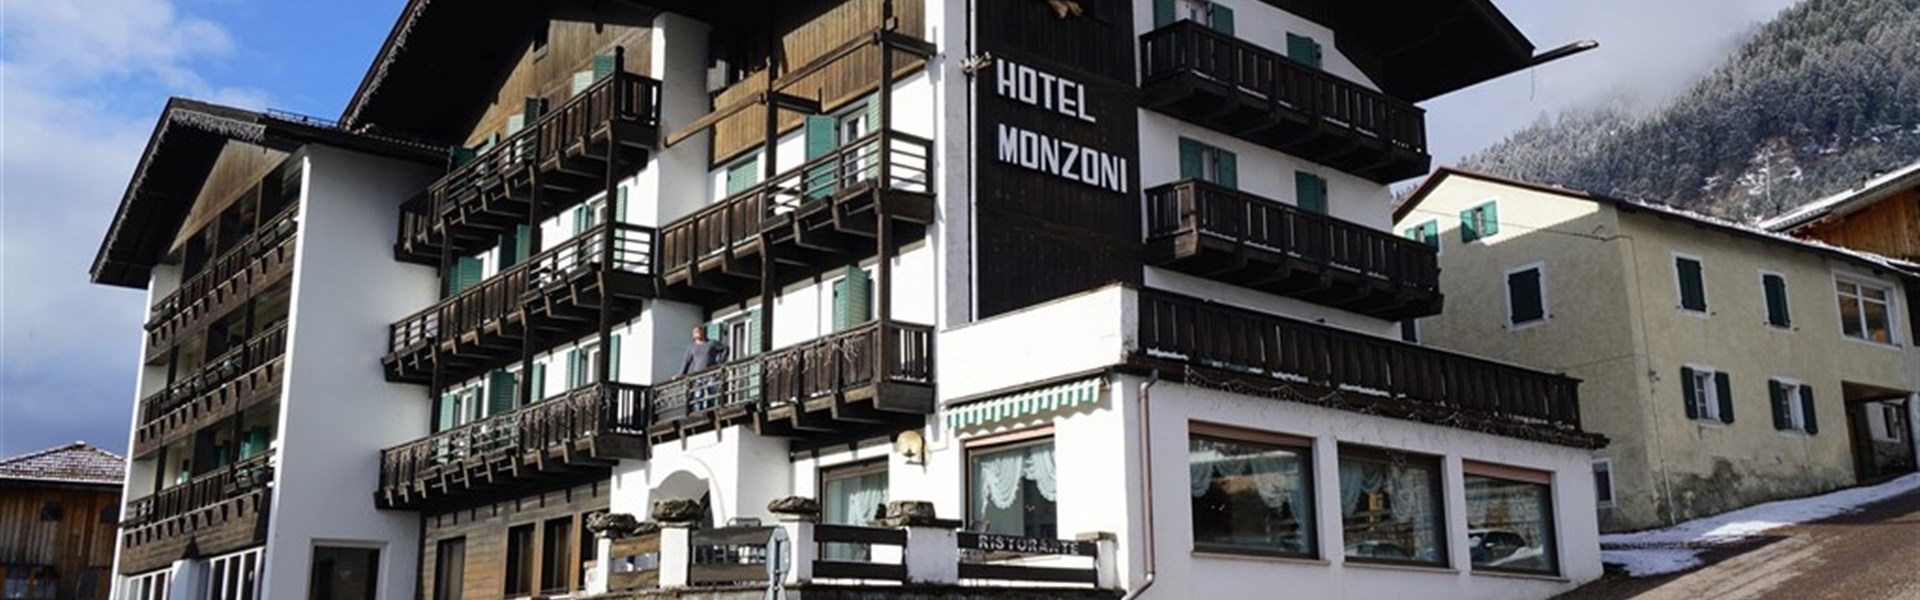 Hotel Monzoni (zima / winter) - 